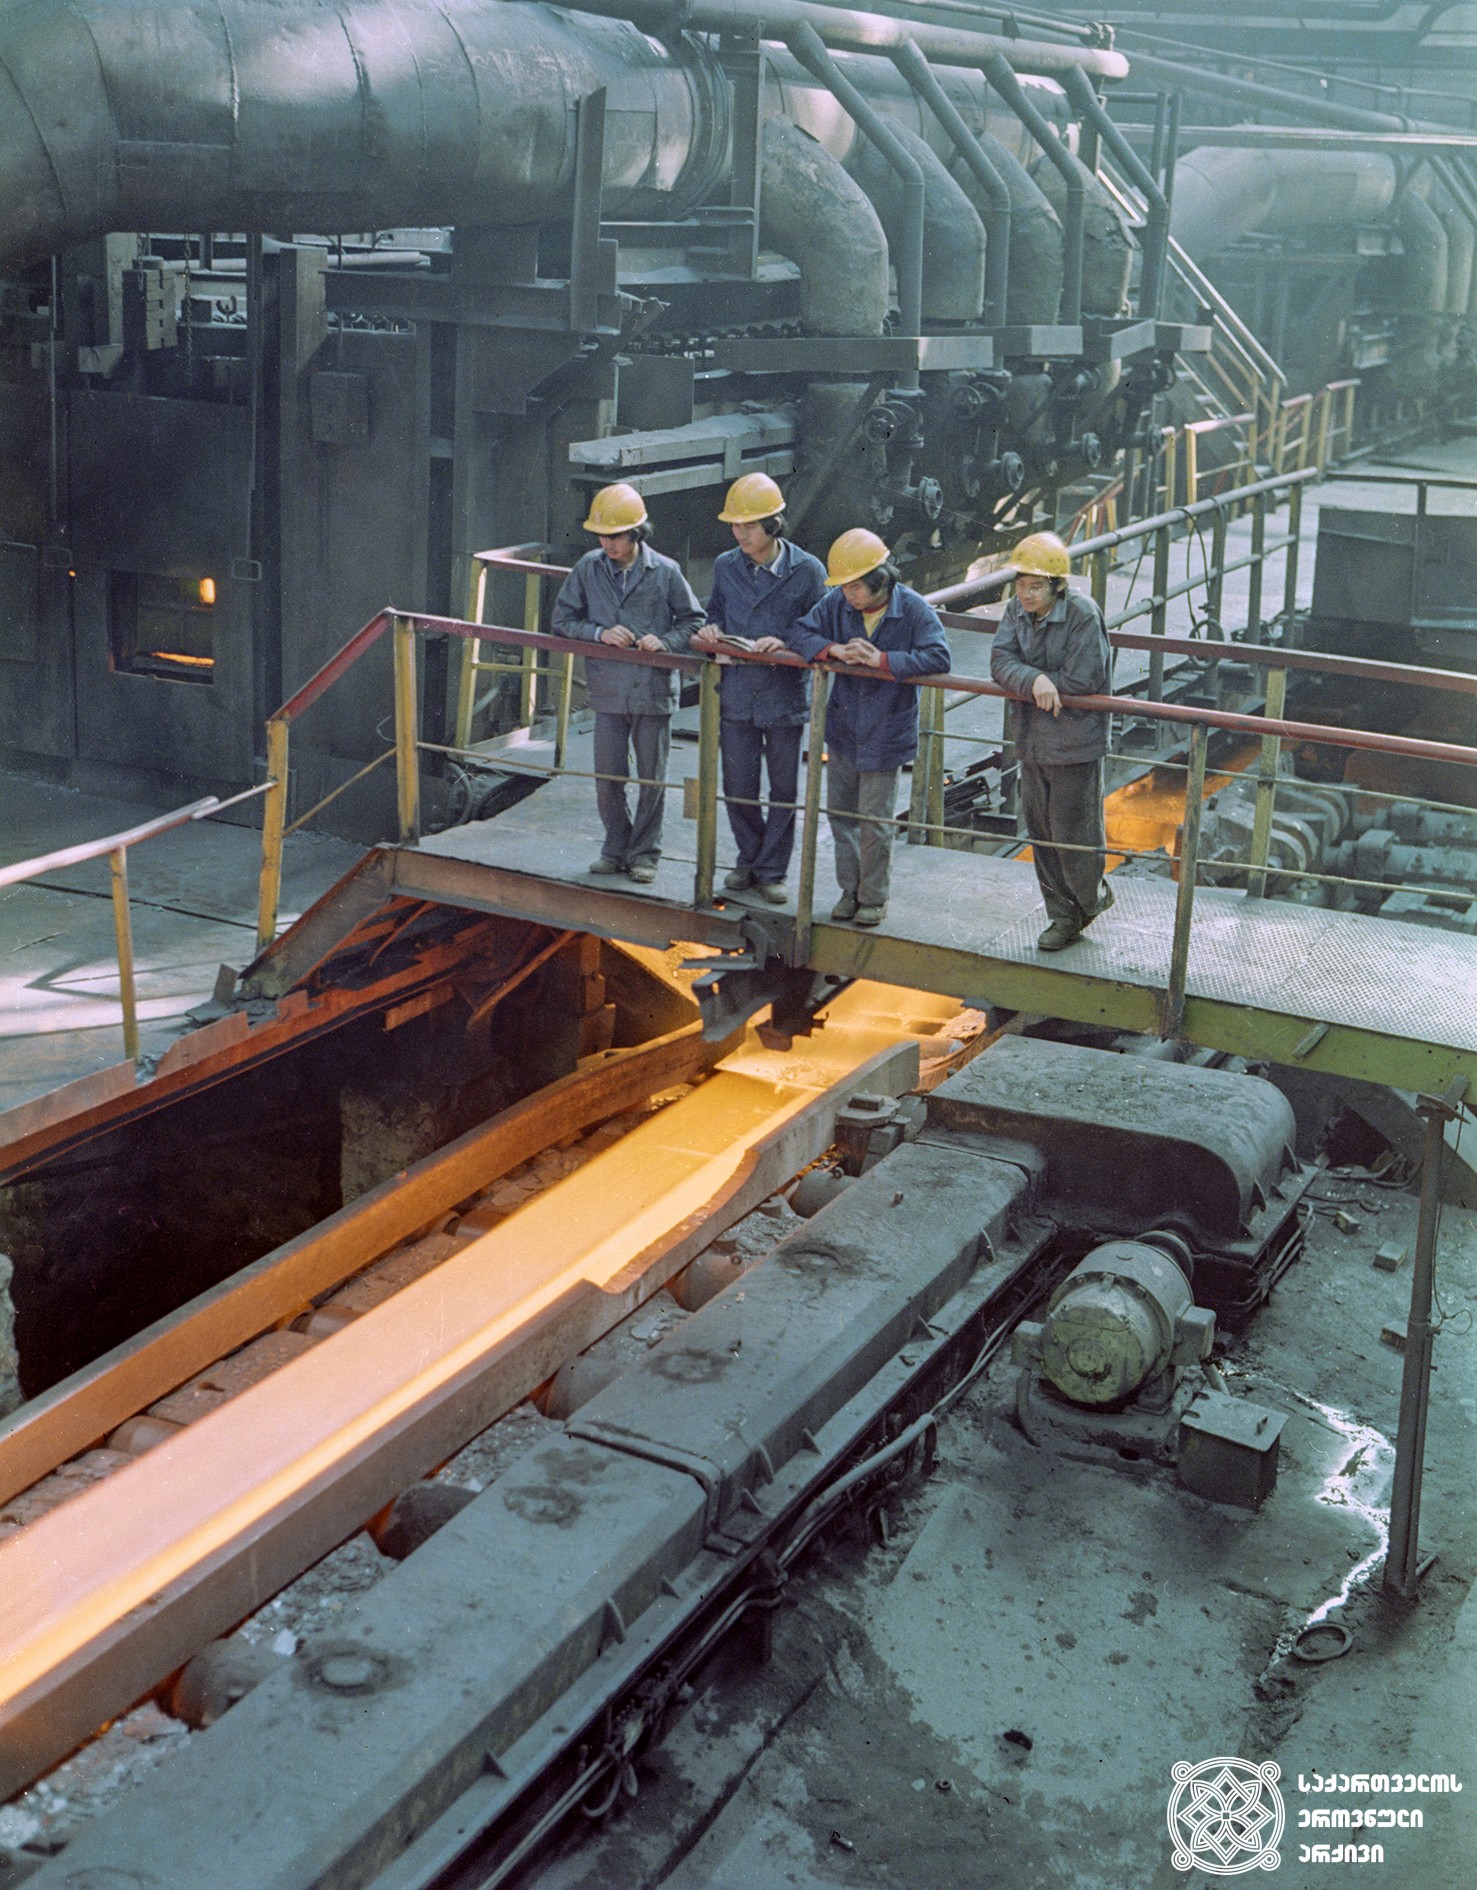 ვიეტნამელები პრაქტიკაზე რუსთავის მეტალურგიულ ქარხანაში. 1977 წელი. 
<br>
Vietnamese people practicing in Rustavi Metallurgical factory. 1977.